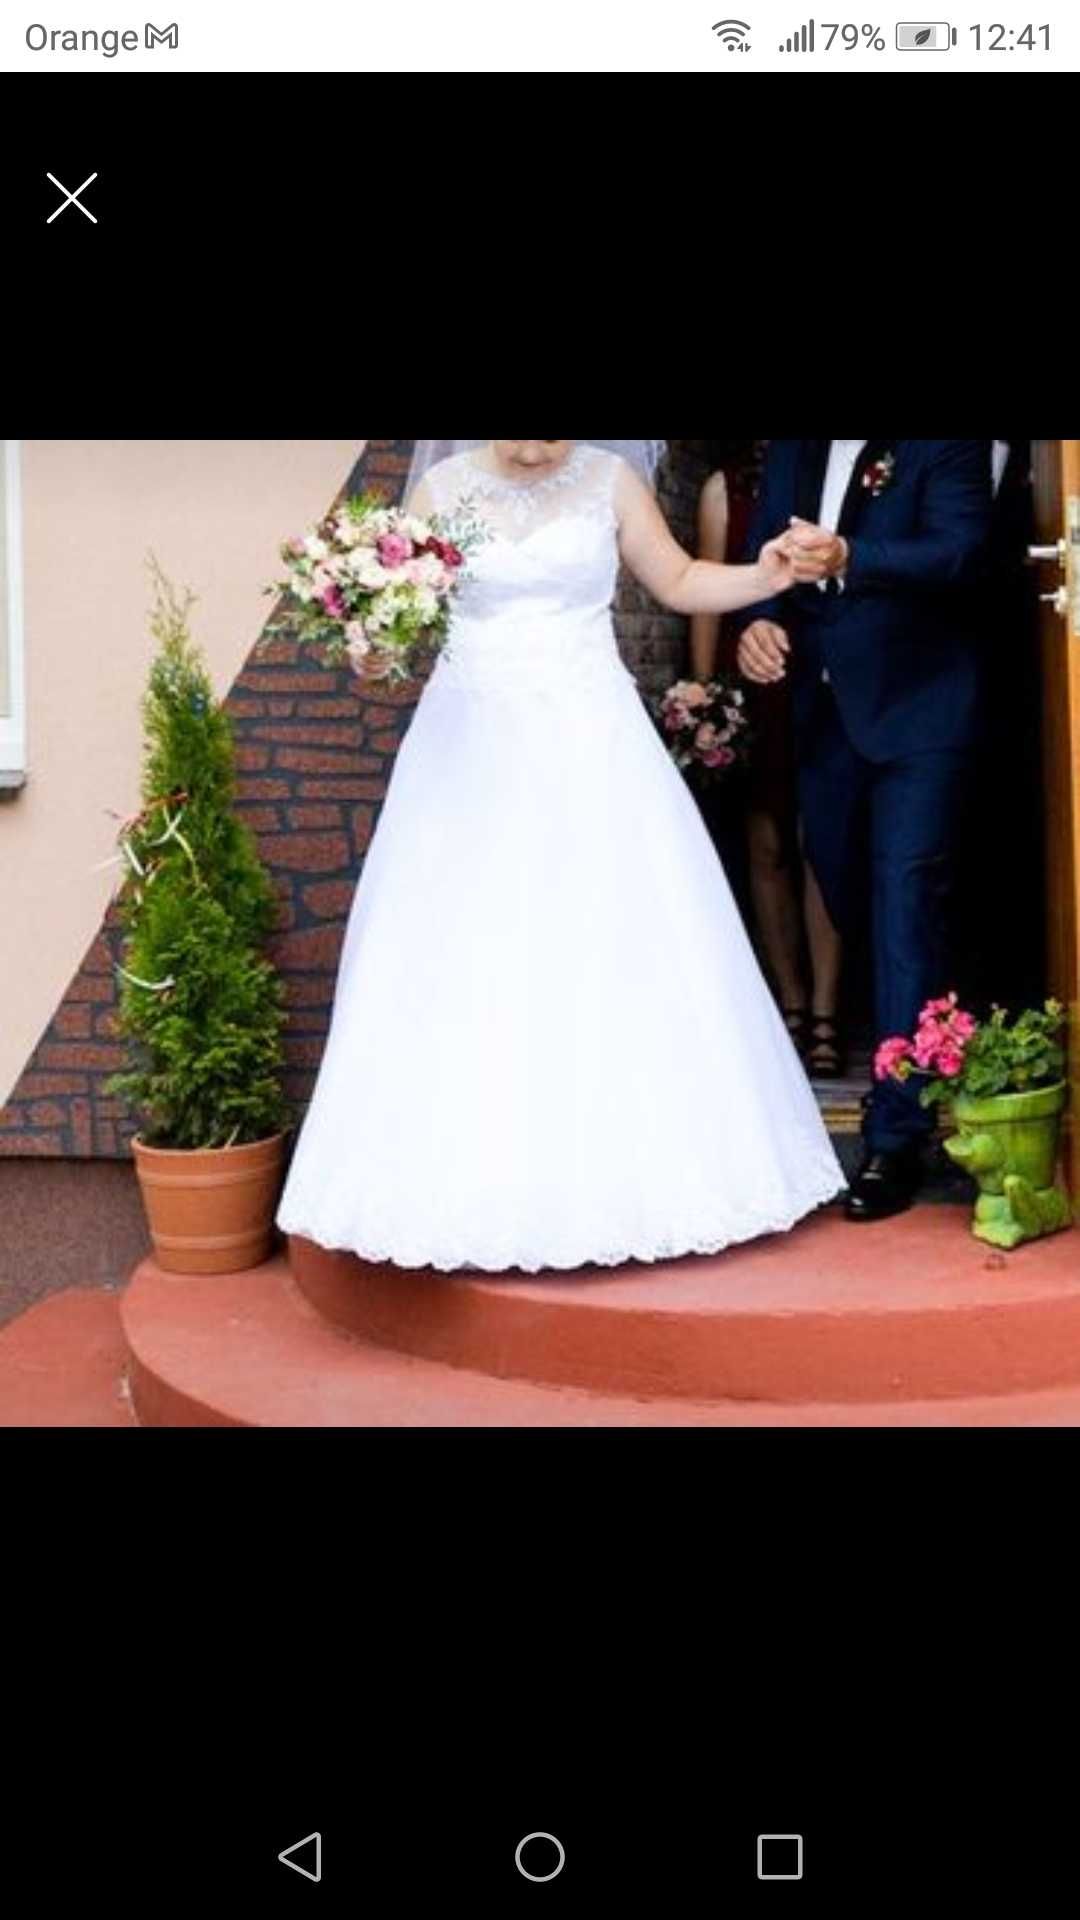 Piękna suknia ślubna polecam